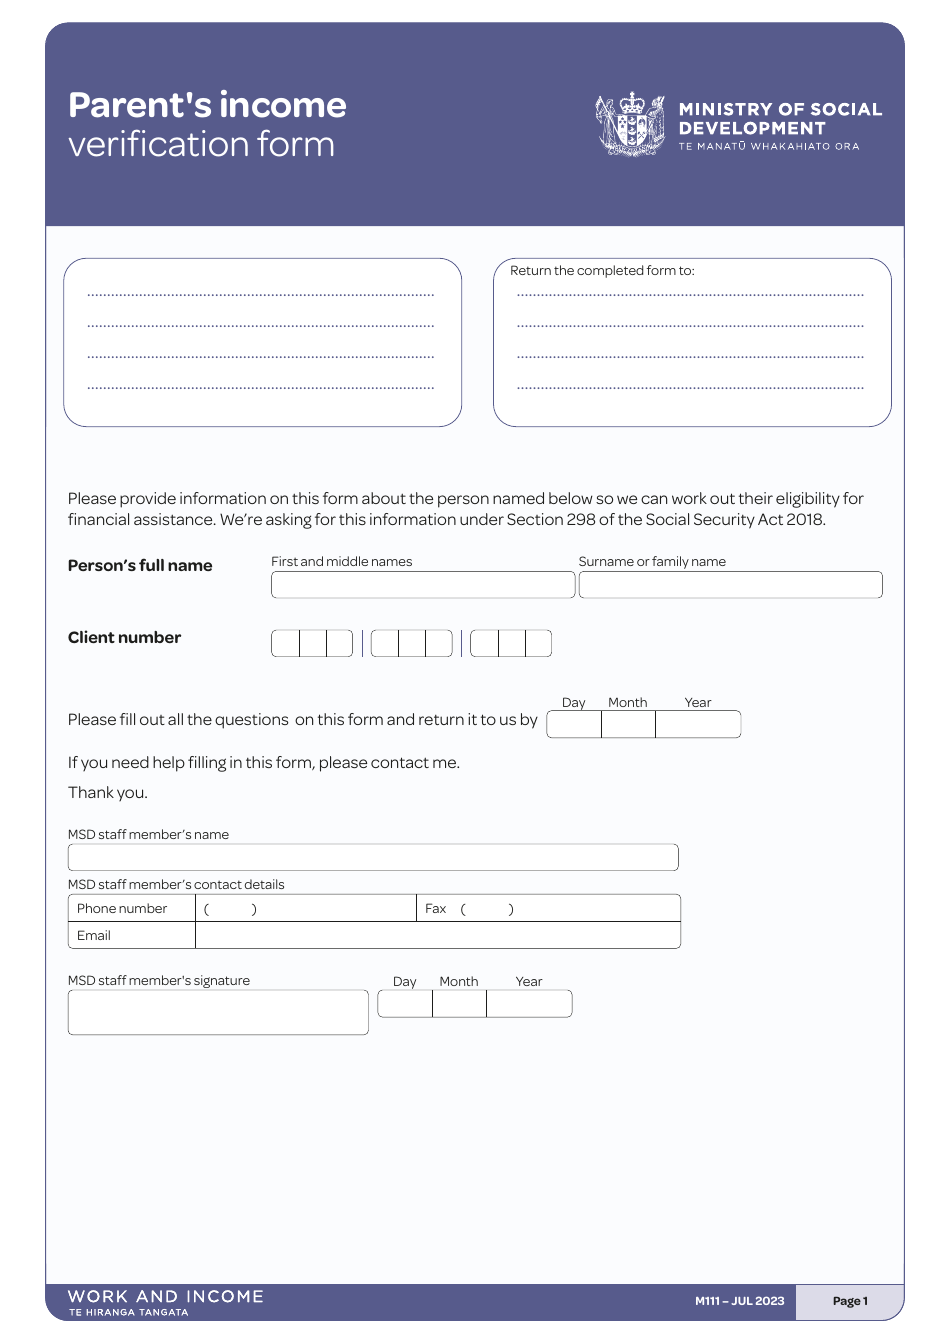 Form M111 Parents Income Verification Form - New Zealand, Page 1